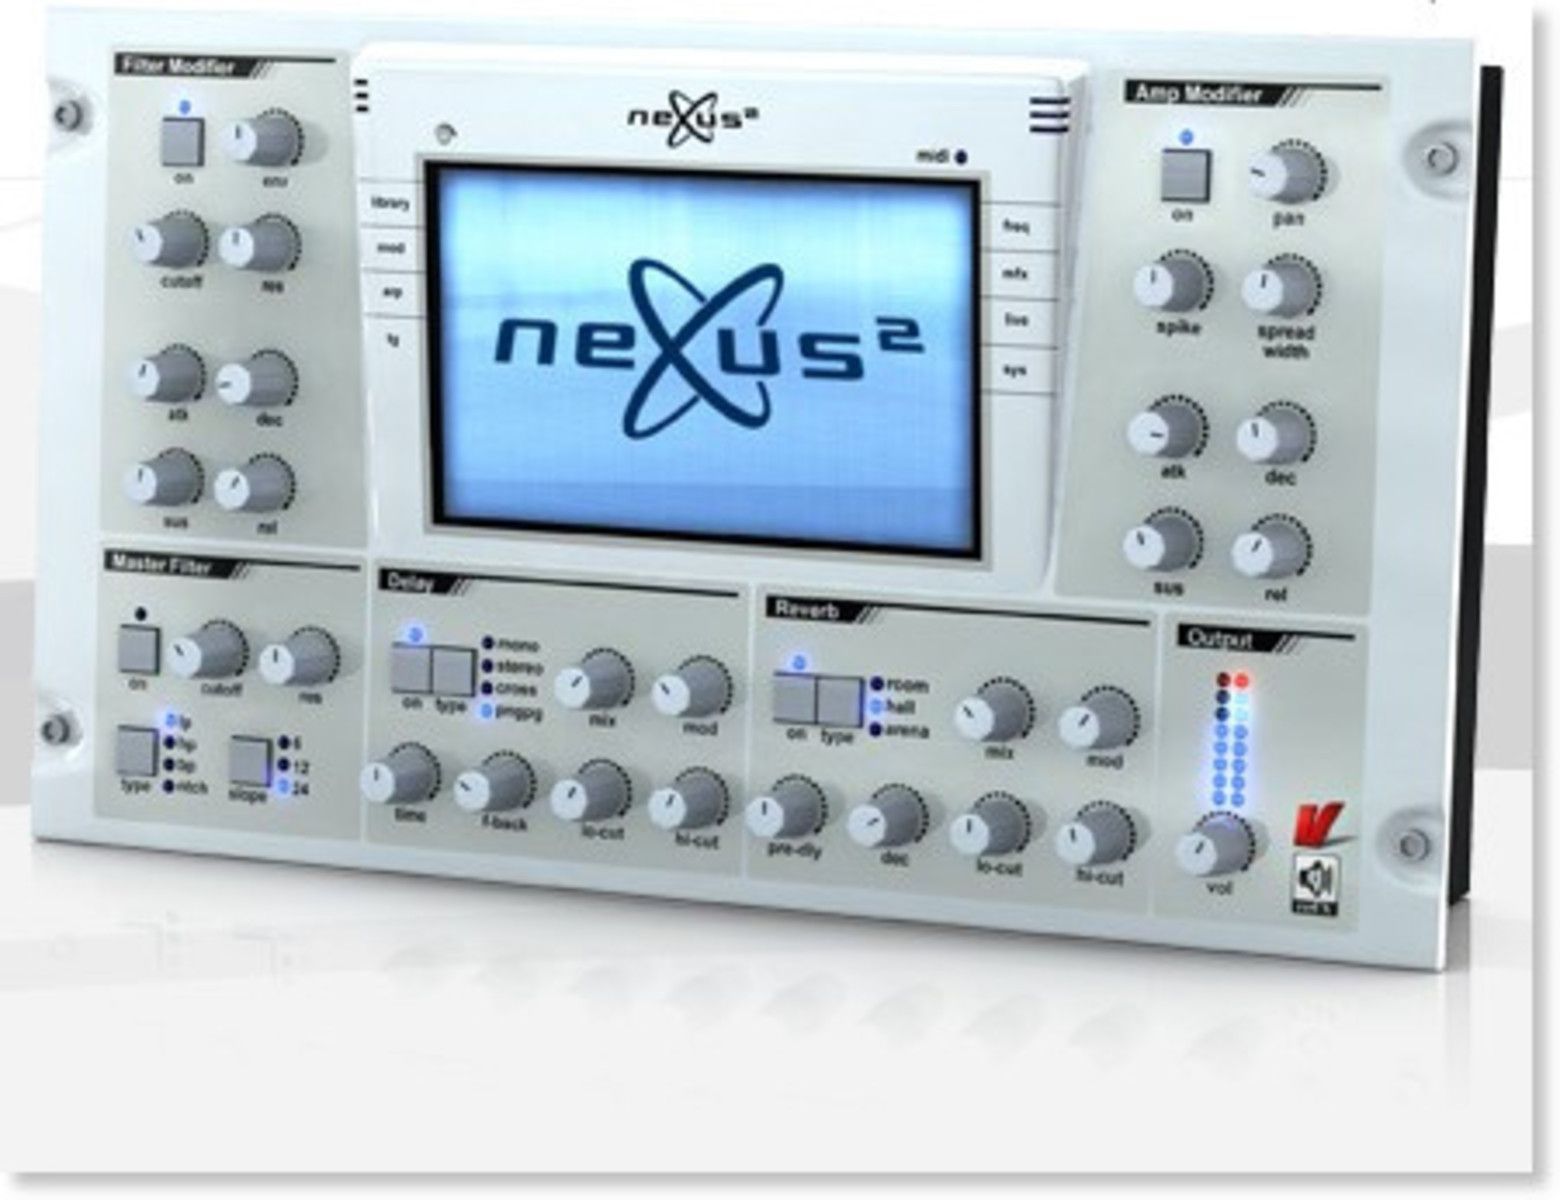 nexus 2 free download full version